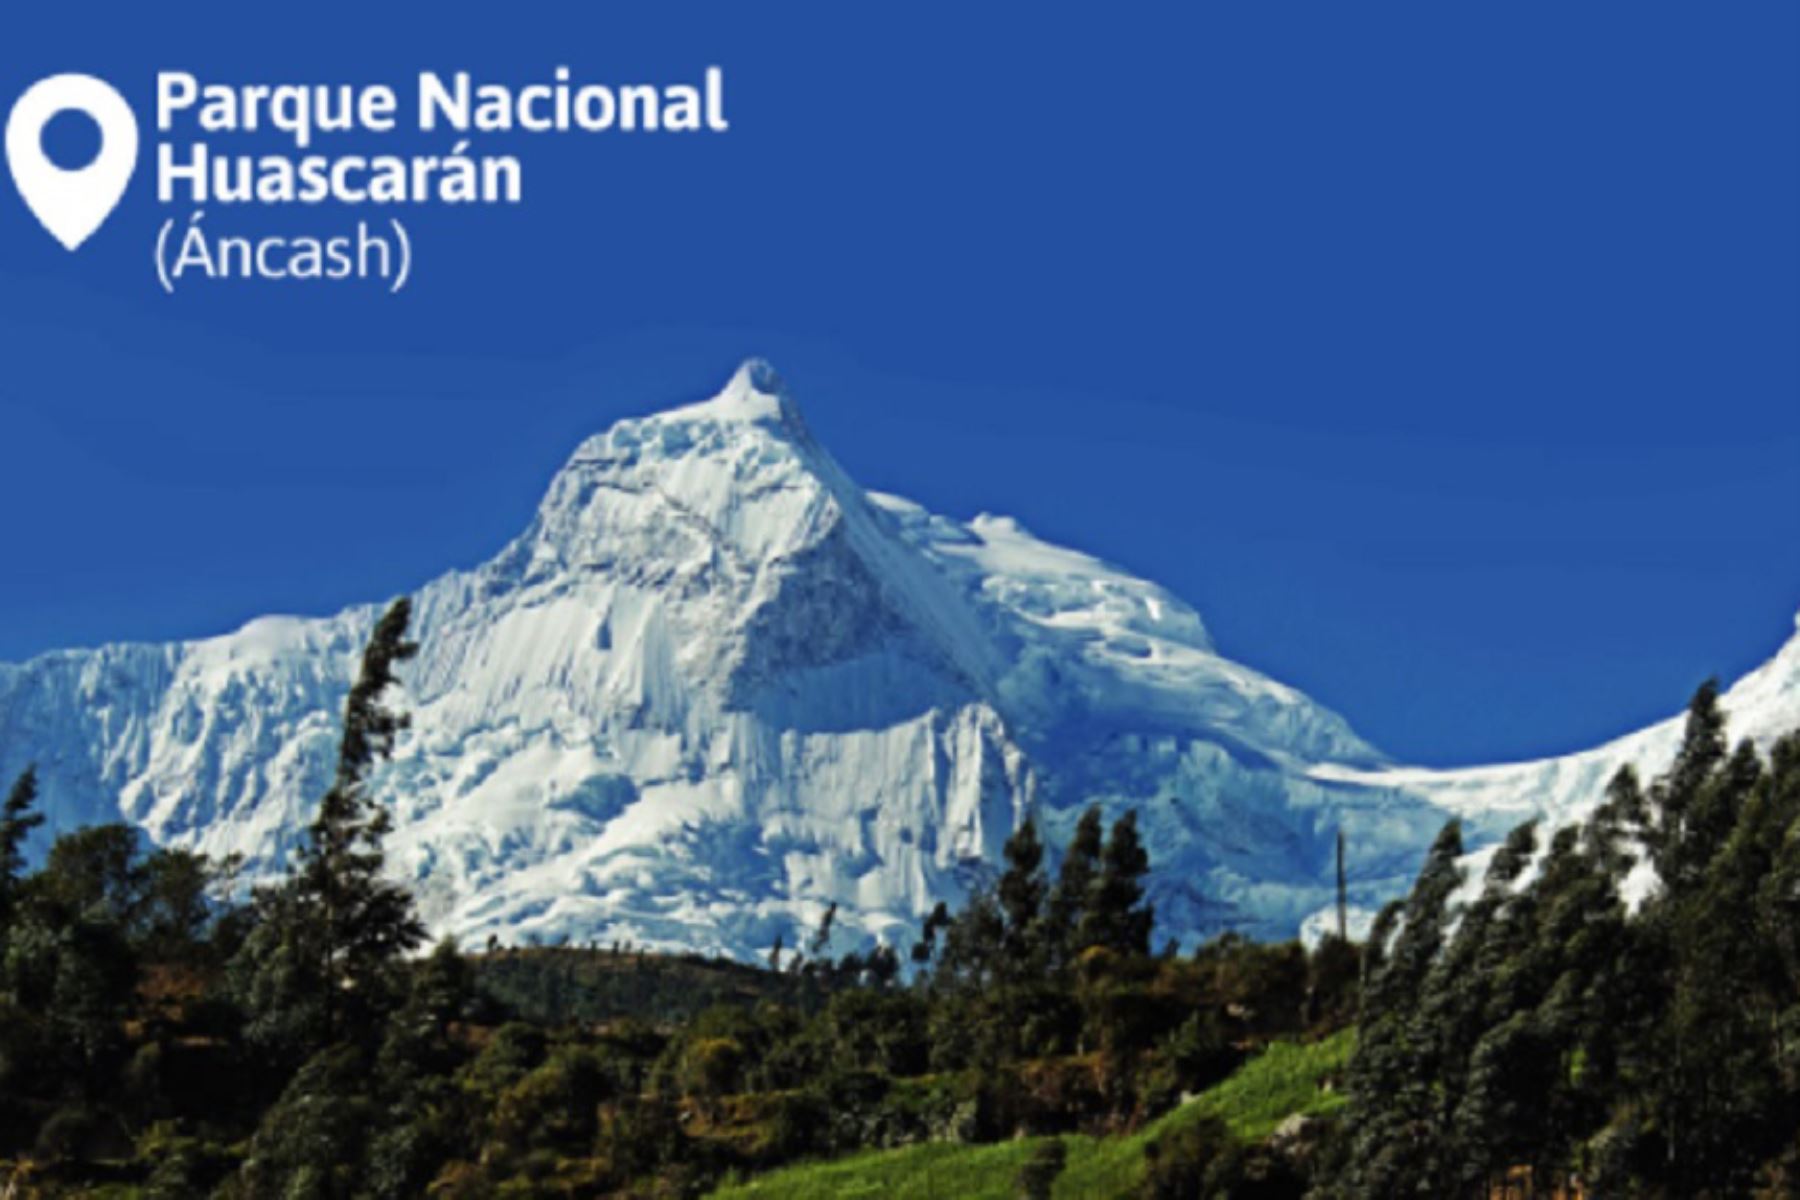 Uno de los destinos emblemáticos del Perú es el Parque Nacional Huascarán, donde se puede practicar diversas modalidades de turismo: de aventura, ecológico, excursionismo, vivencial y rural comunitario, entre otros. ANDINA/Difusión